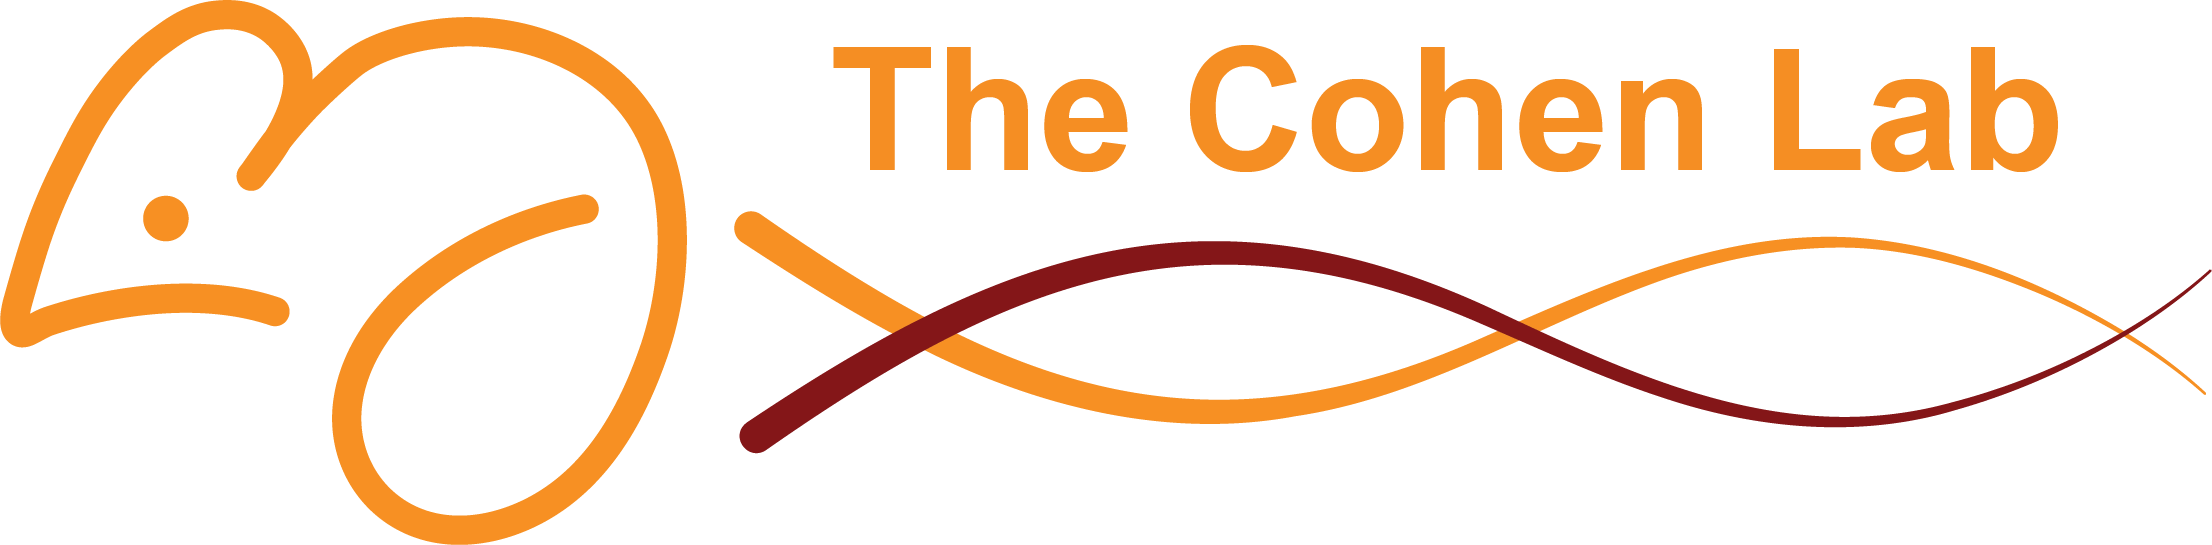 Cohen Lab Logo